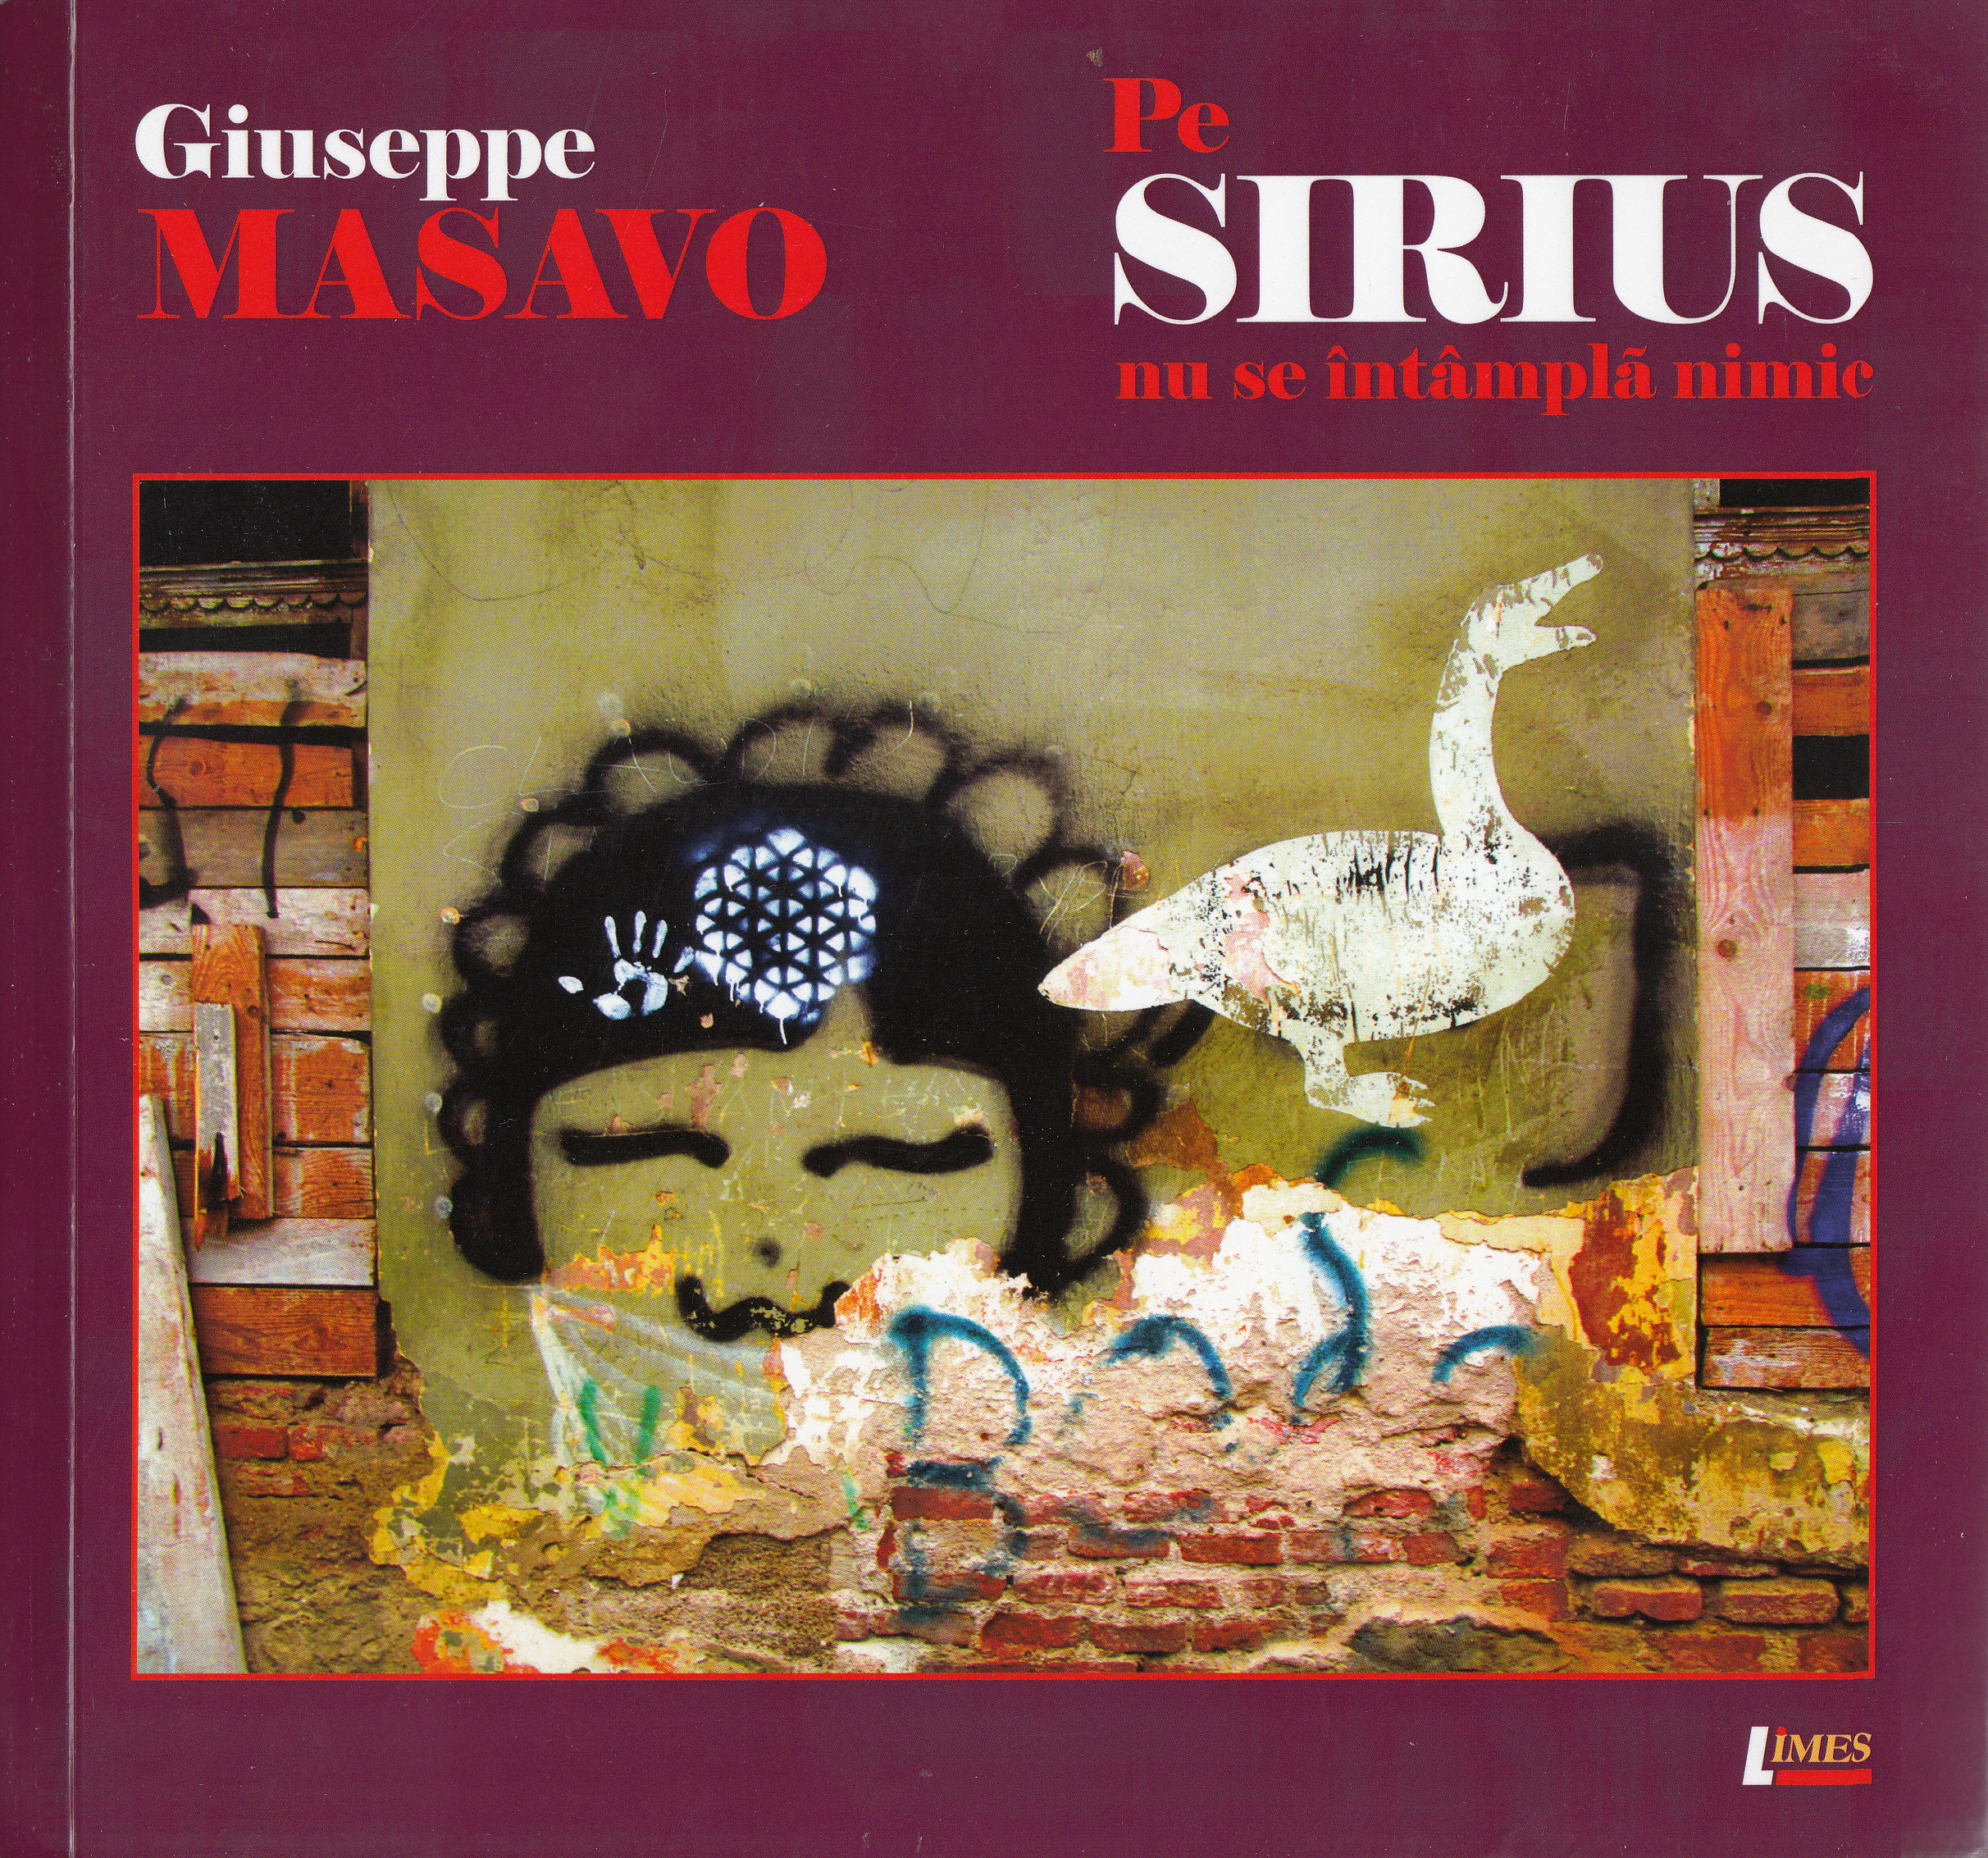 Pe Sirius nu se intampla nimic - Giuseppe Masavo